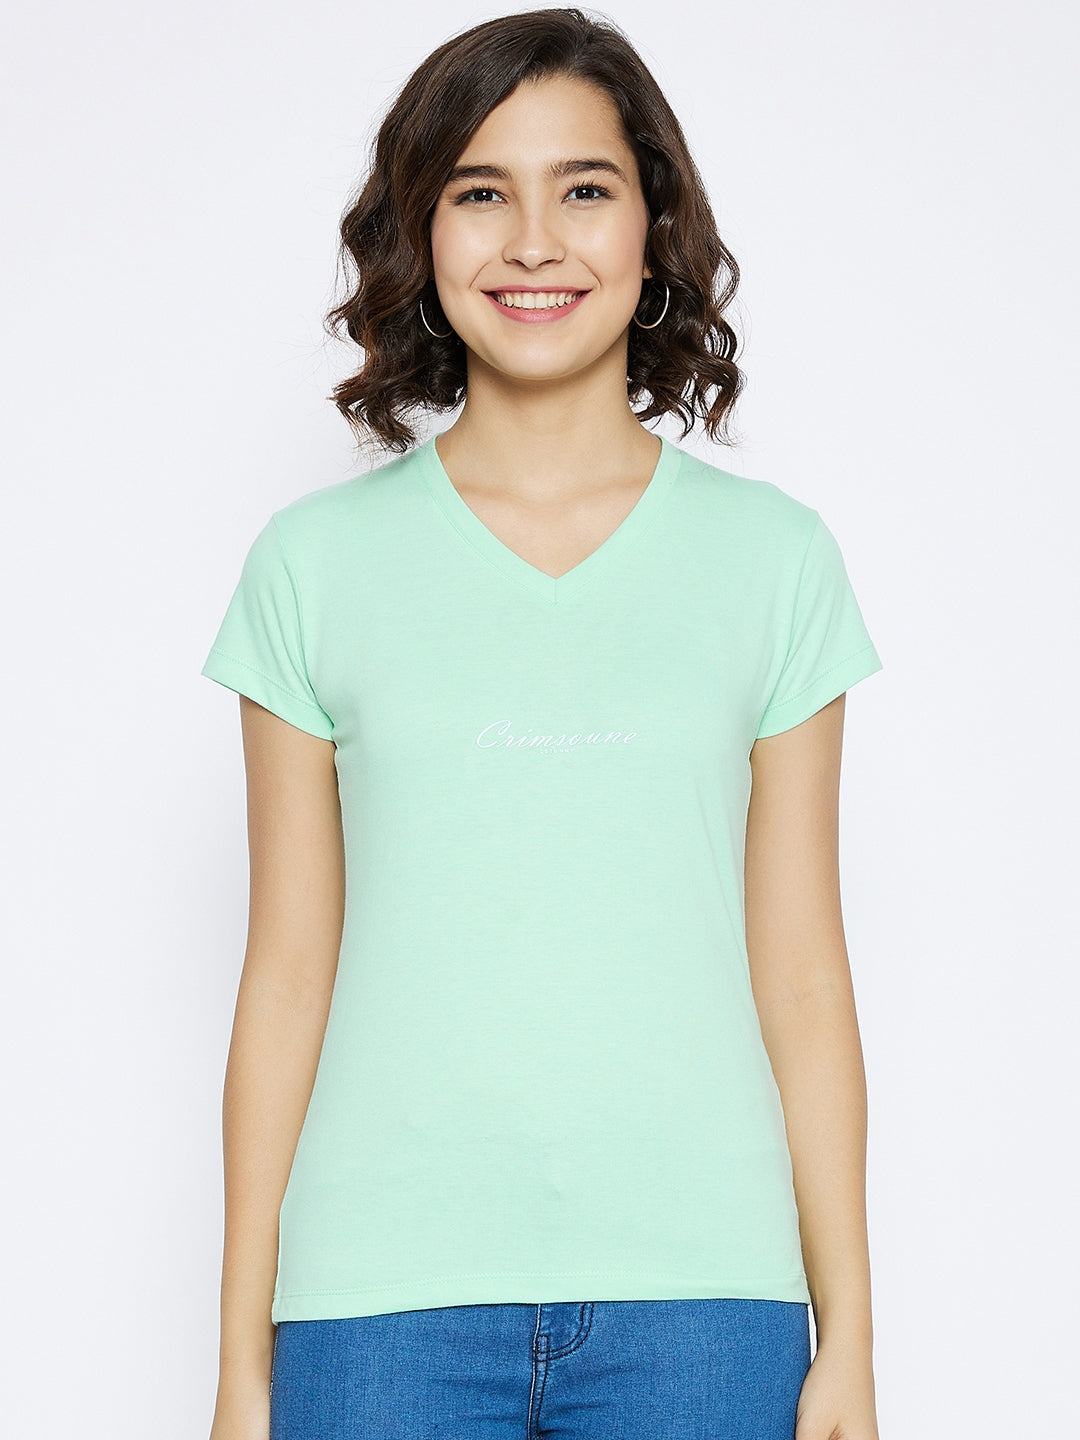 Green Printed V-Neck T-shirt - Women T-Shirts